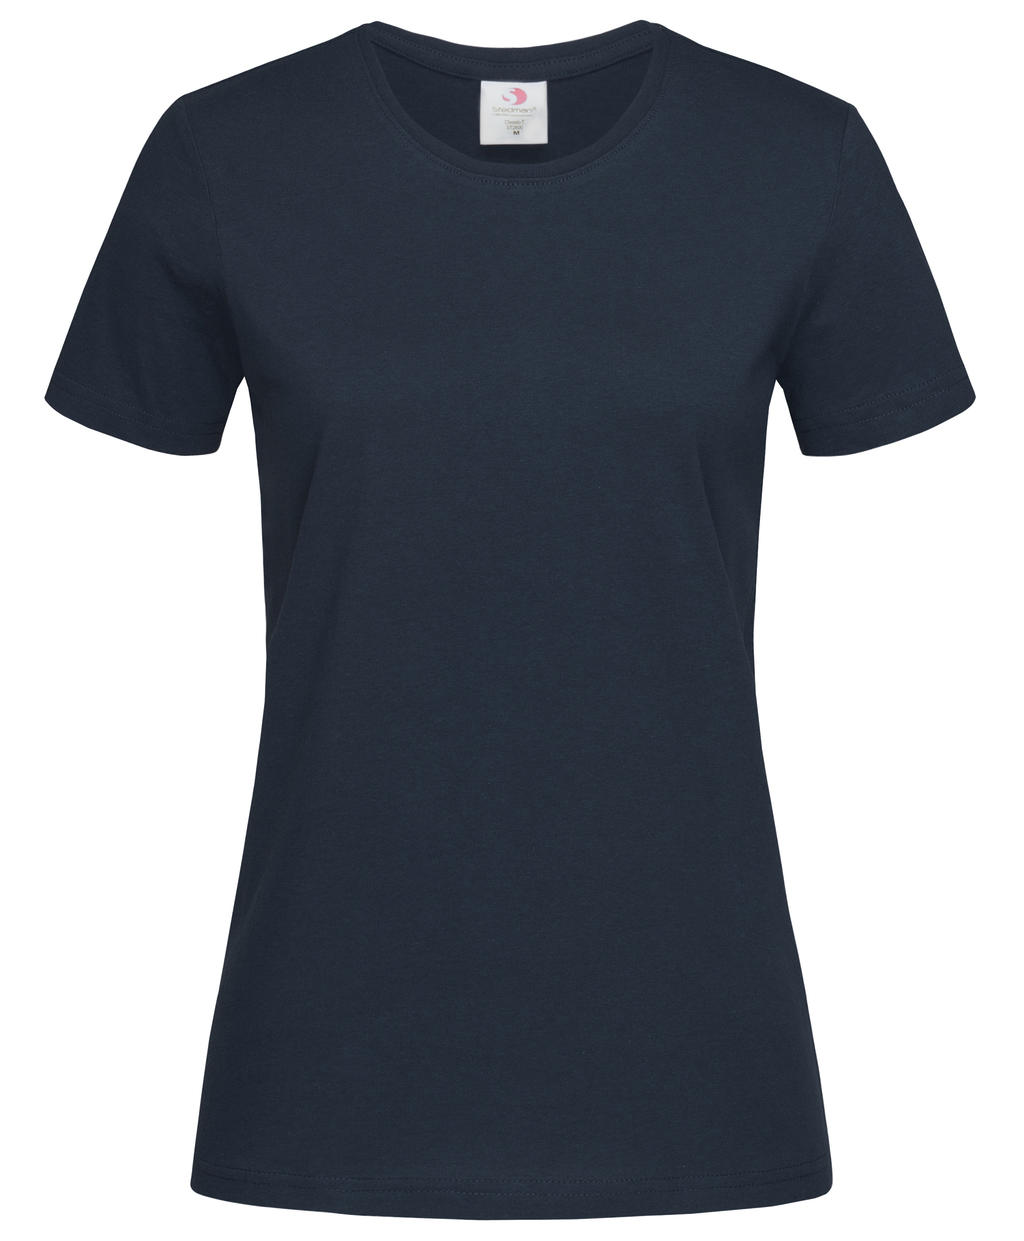 Tričko dámské Stedman Fitted s kulatým výstřihem - tmavé navy, XL